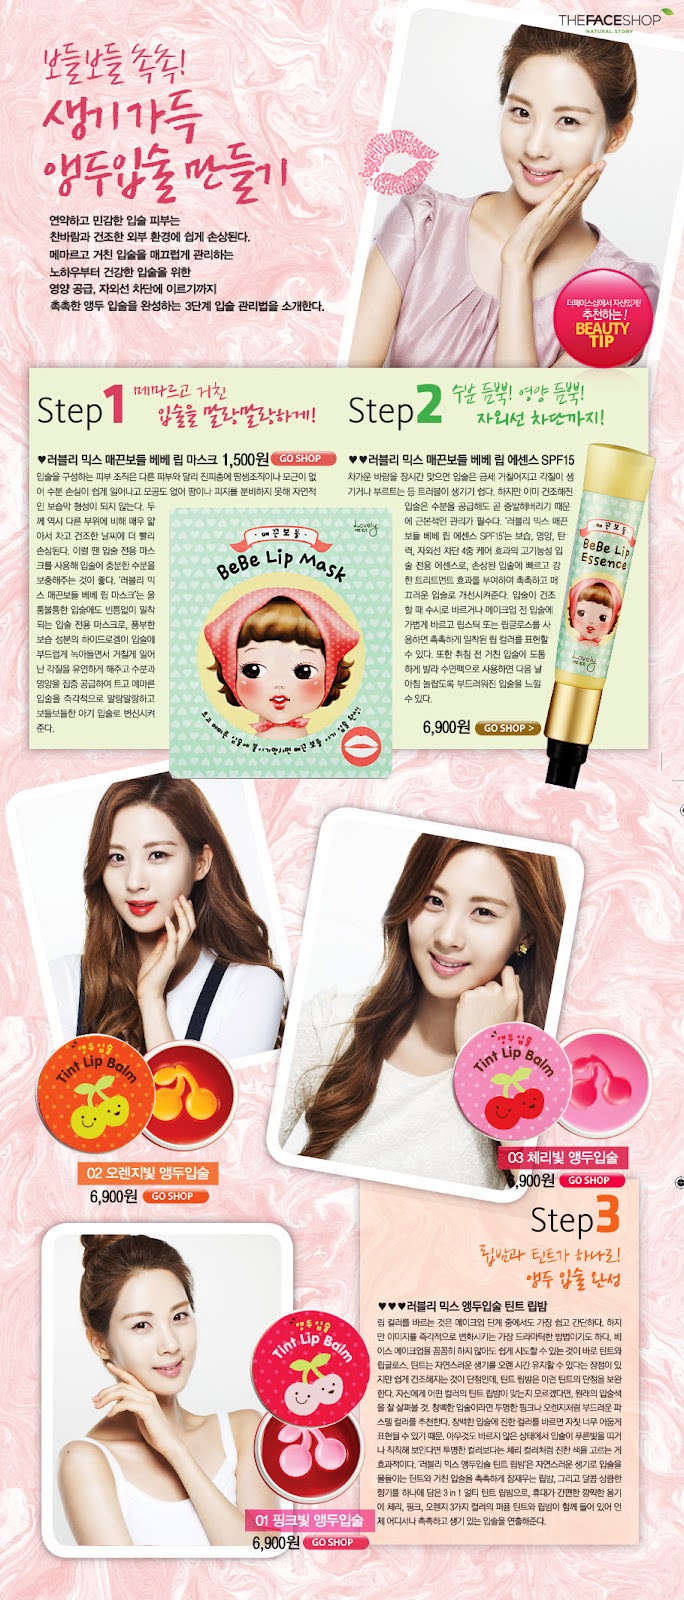 Pide una foto!!! - Página 7 Snsd+seohyun+the+face+shop+(6)